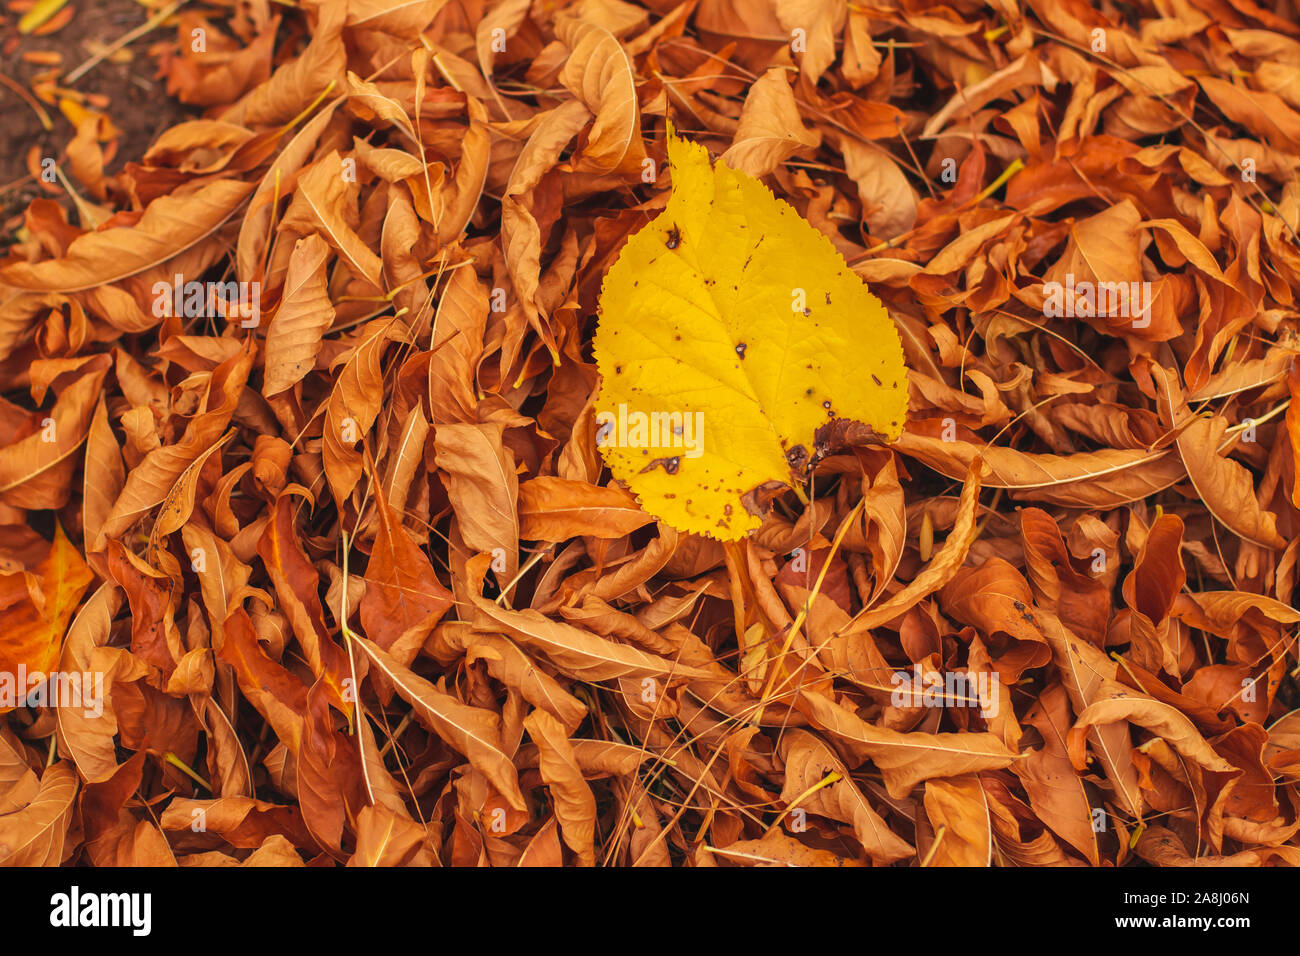 Gelb Blatt auf einem Stapel von Orange sterbenden Blätter im Herbst in einem Park. Stockfoto